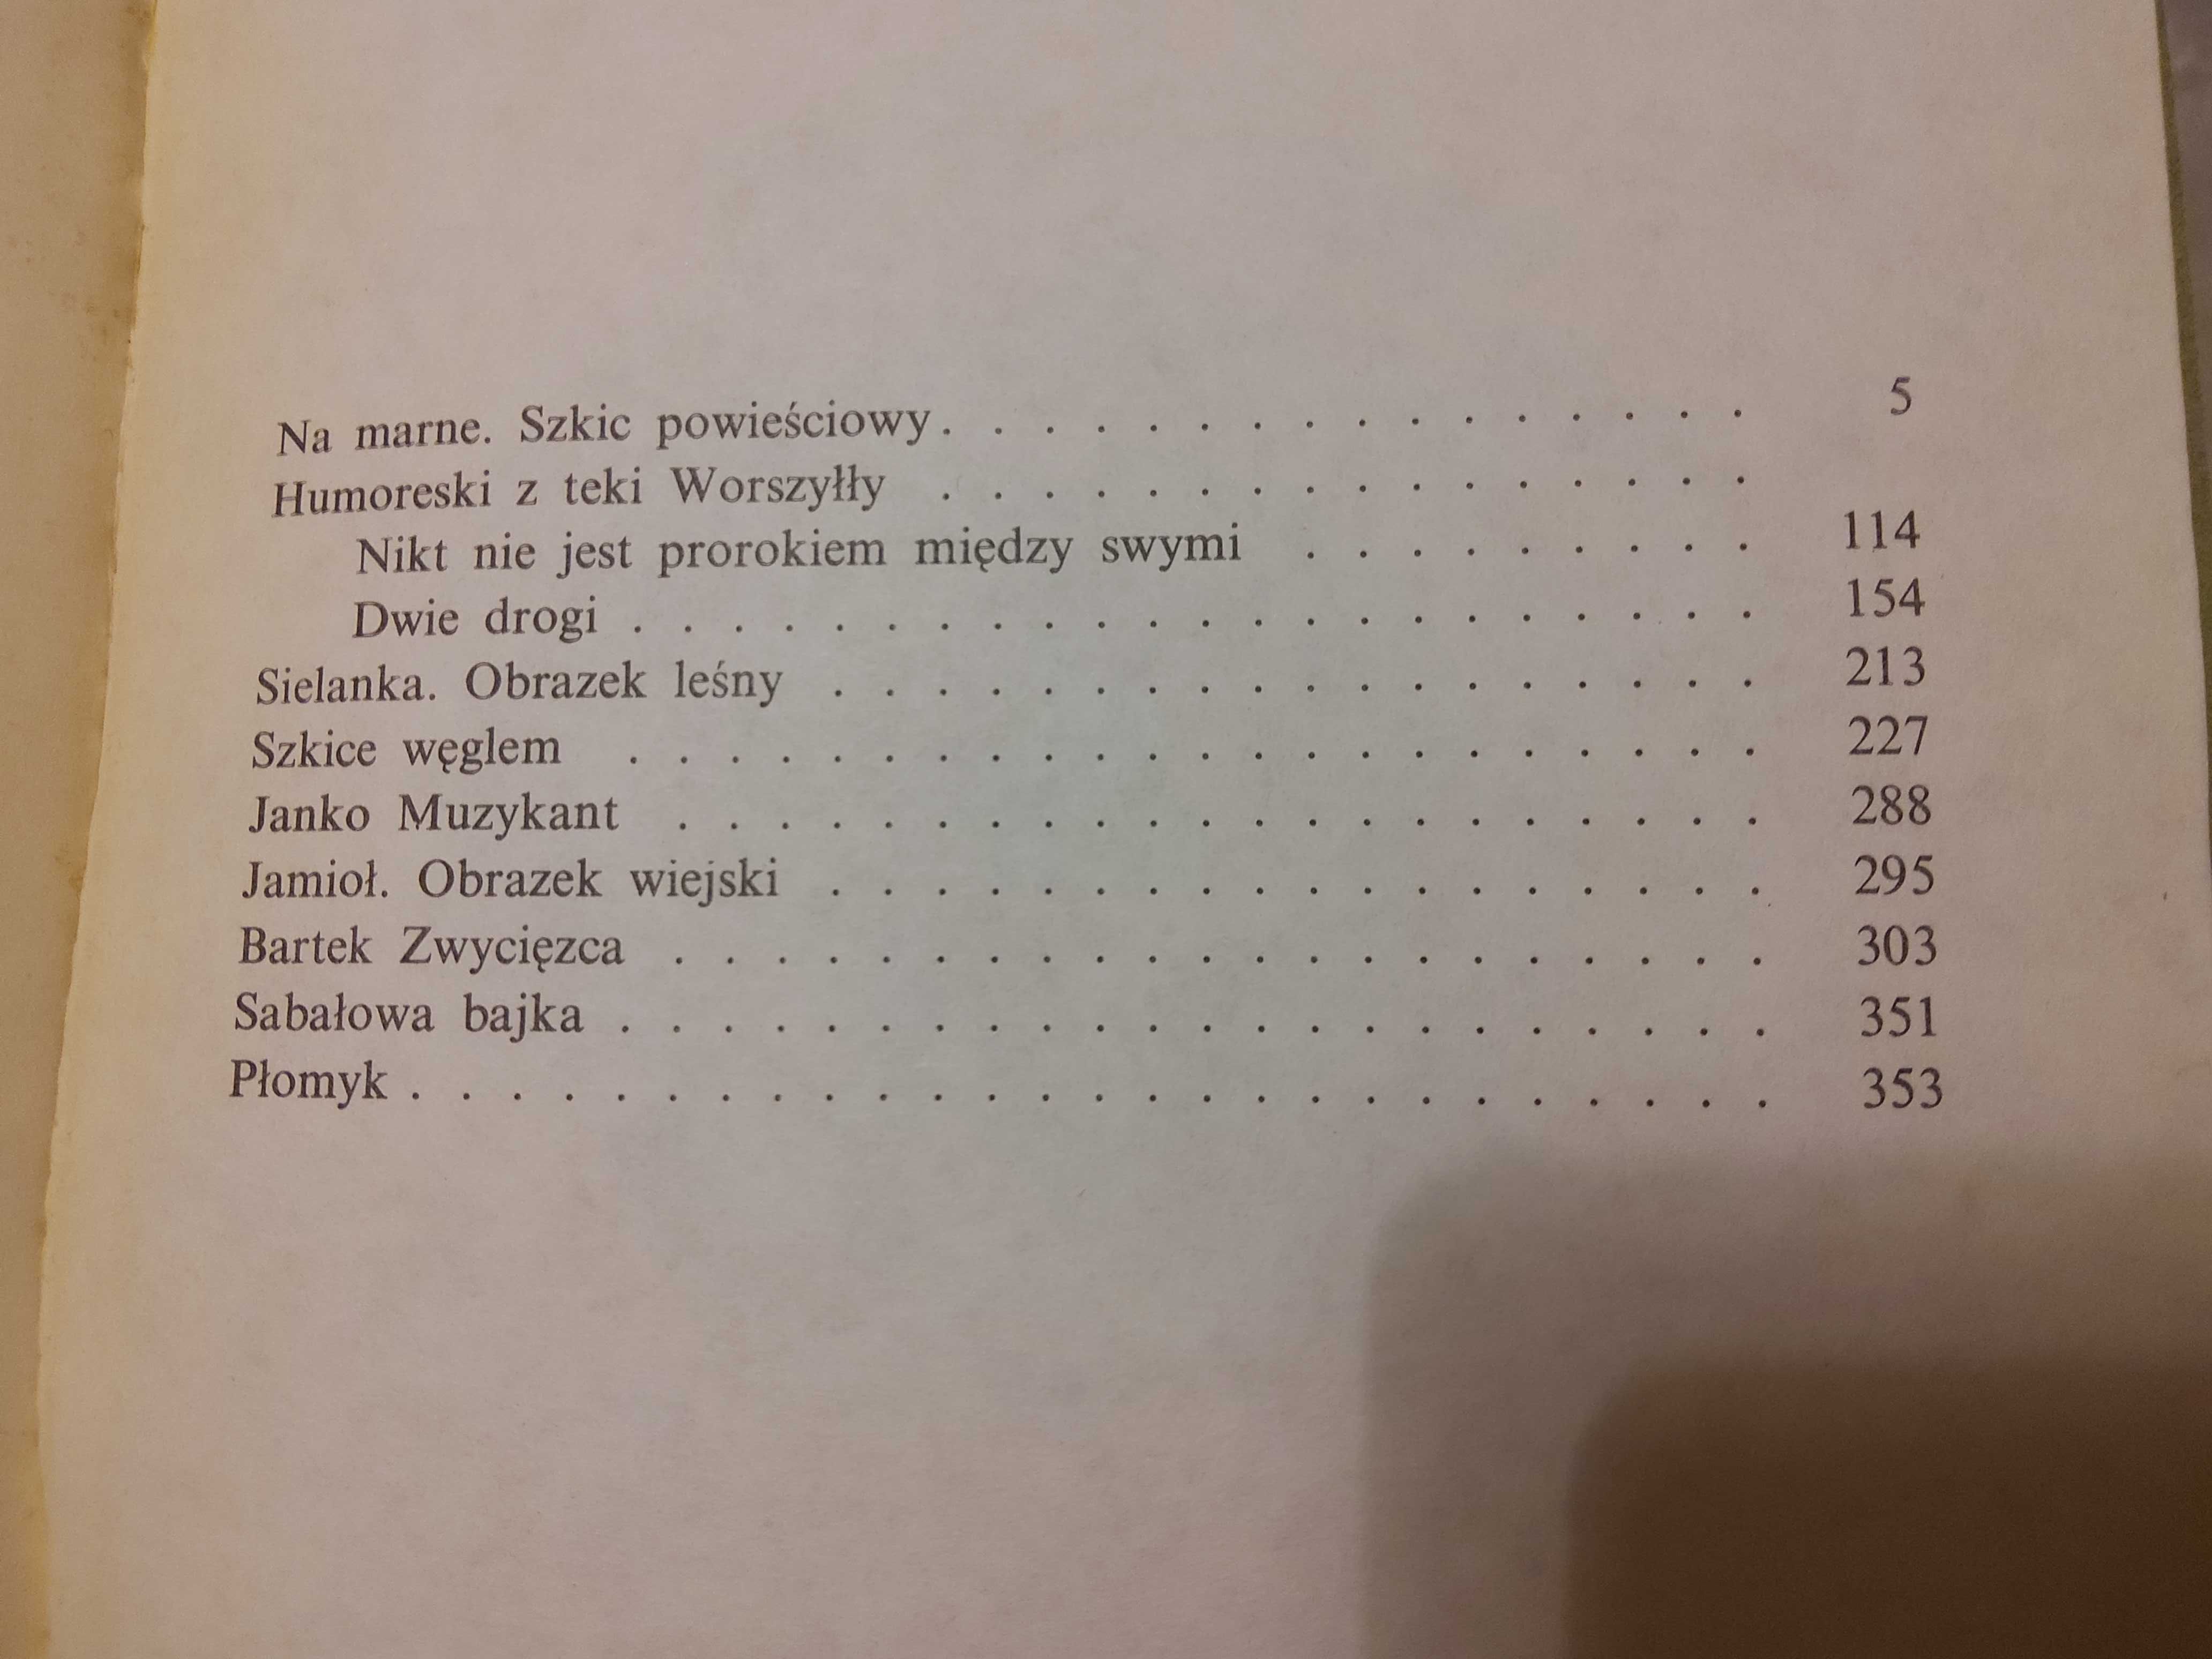 Henryk Sienkiewicz Pisma wybrane 17 tomów, PIW 1989